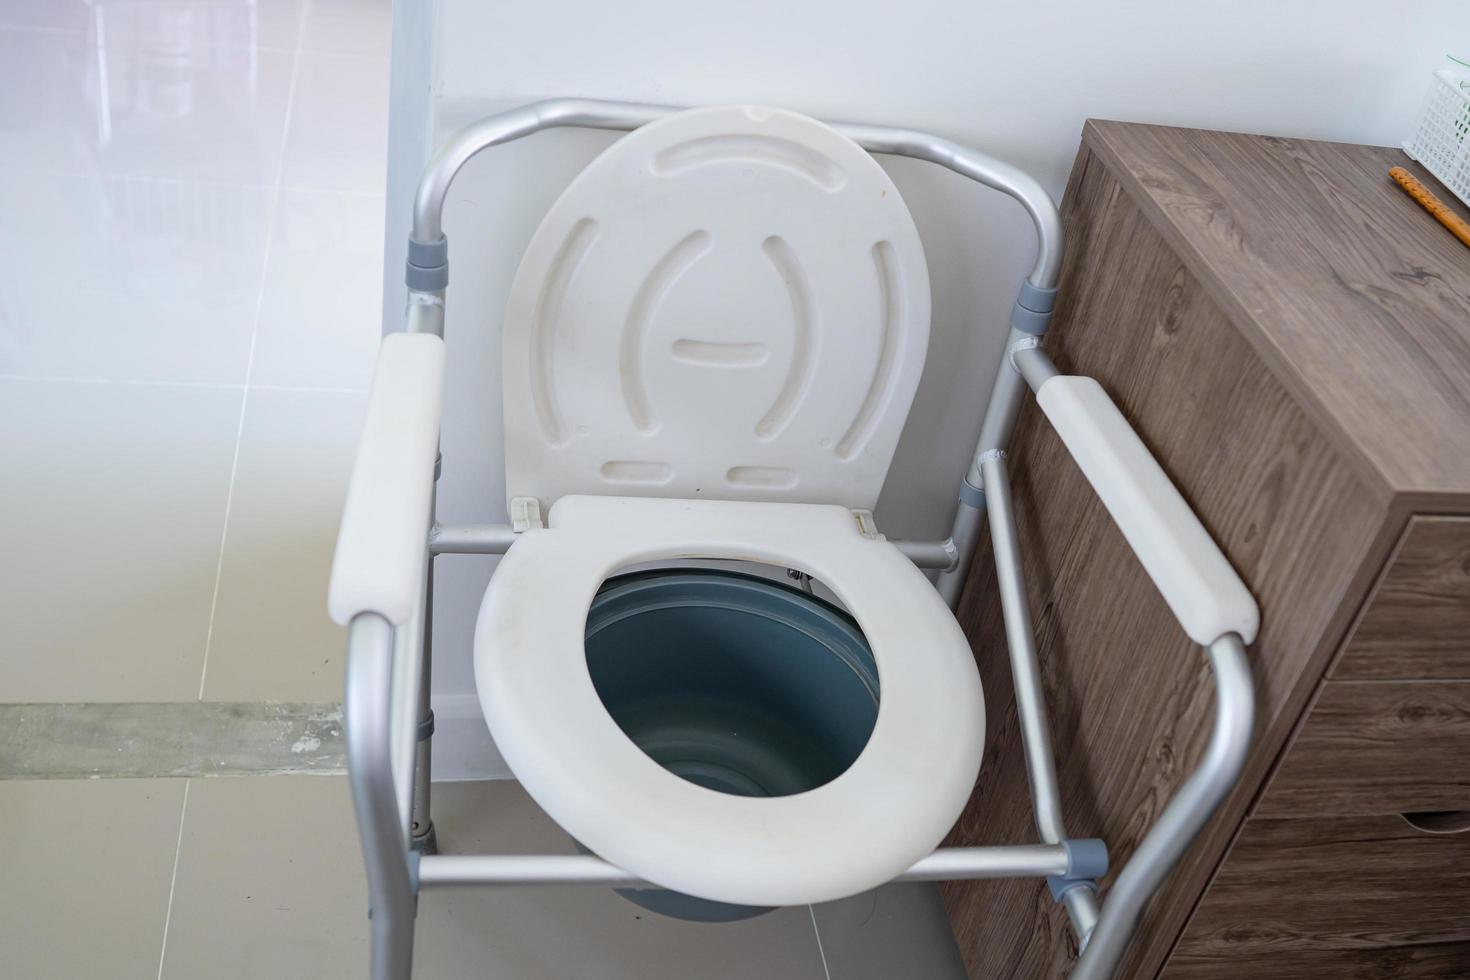 sedia da toilette o toilette mobile possono spostarsi in camera da letto o ovunque per anziani disabili anziani o pazienti in ospedale, concetto medico sano e forte strong foto